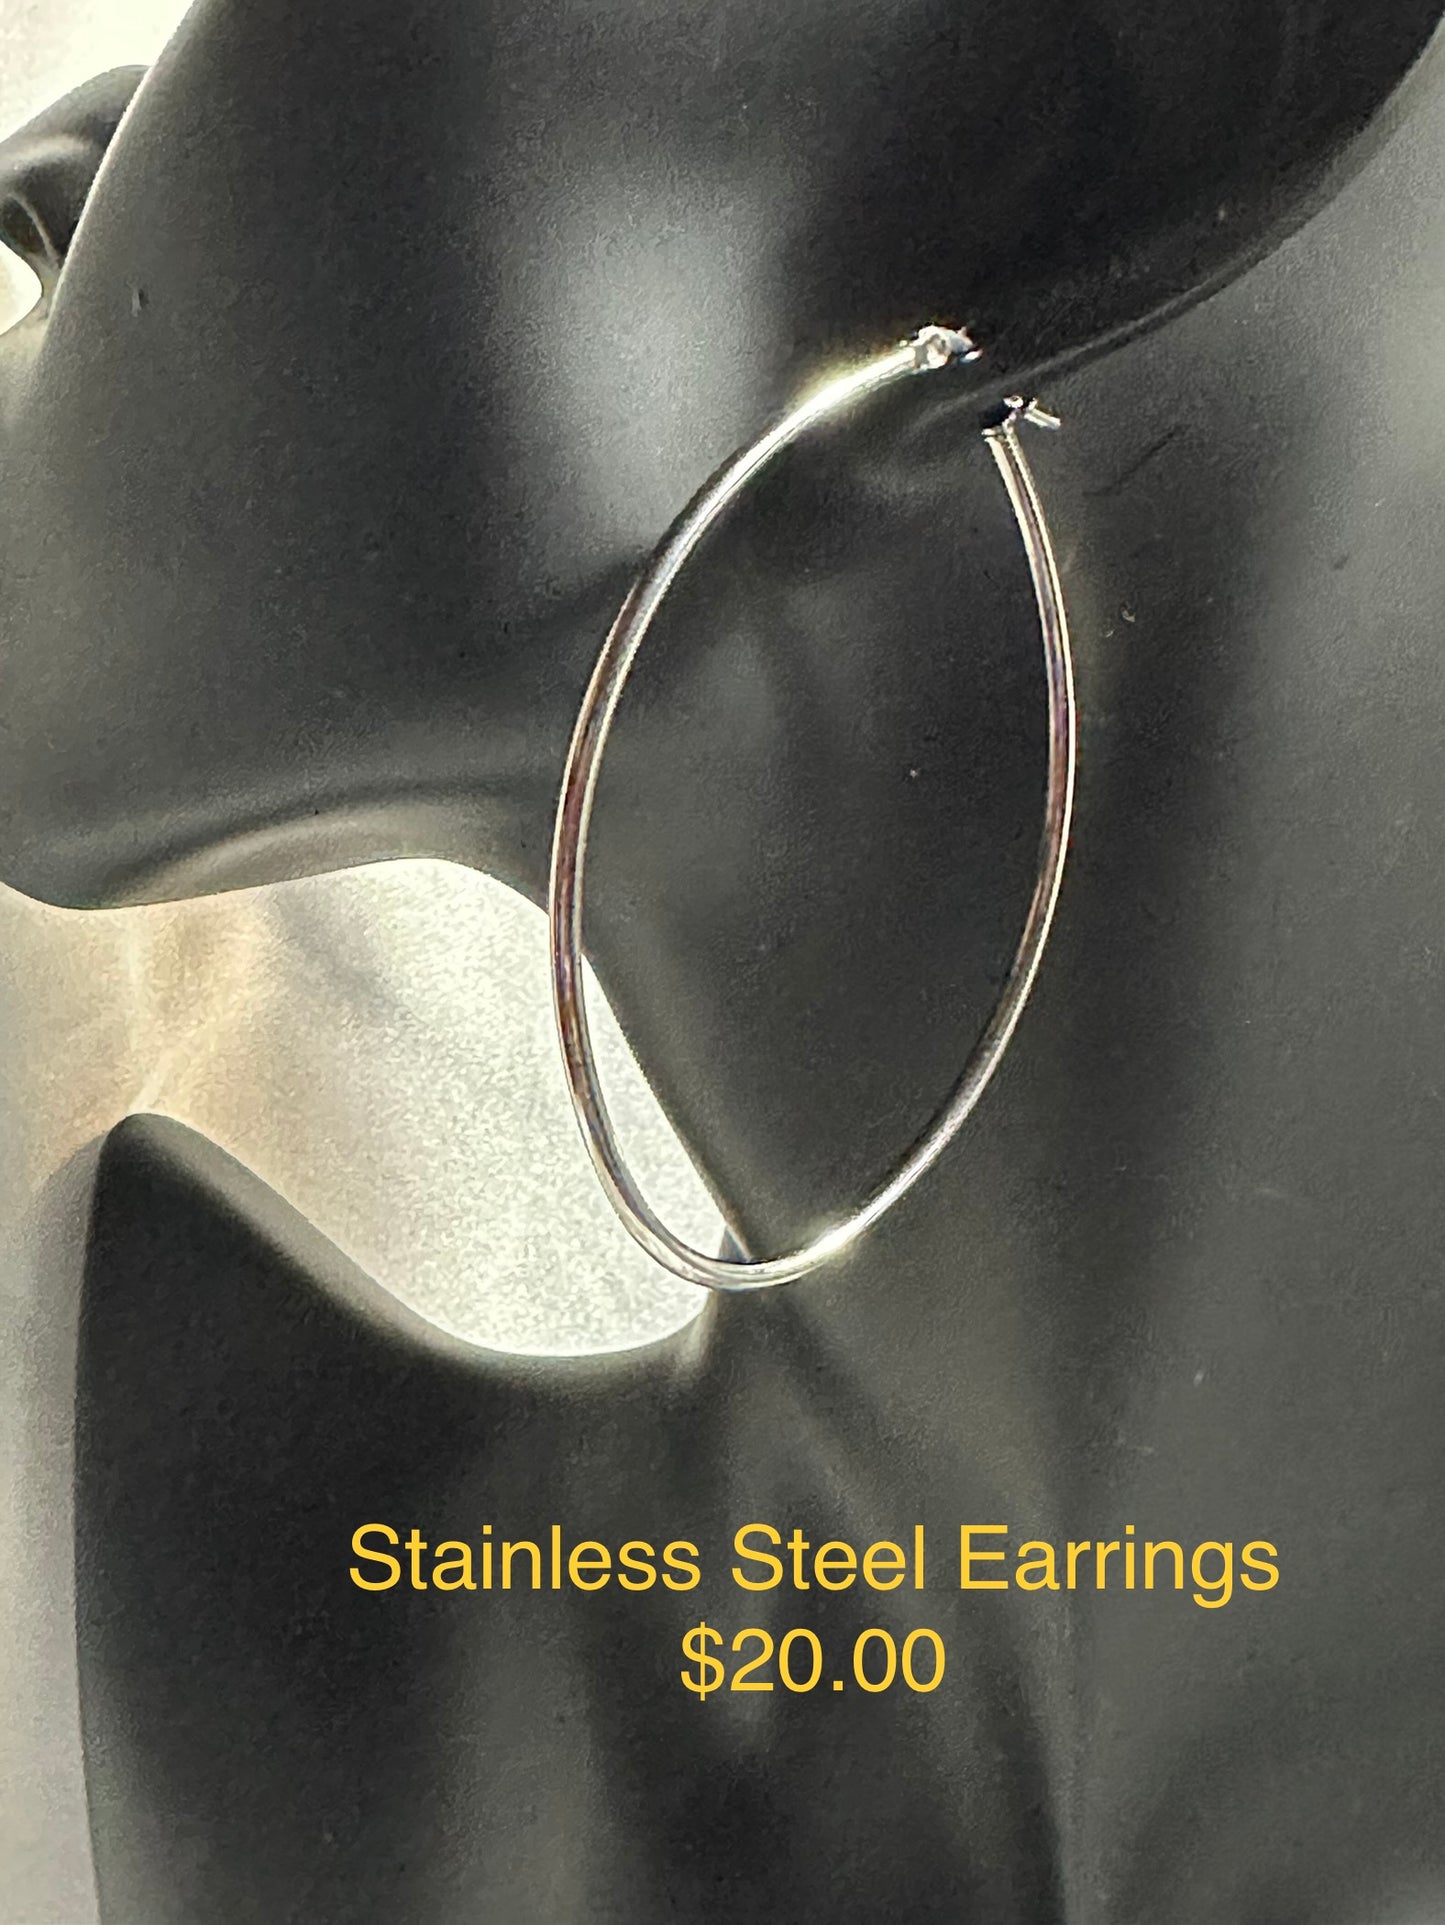 STAINLESS STEEL EARRINGS